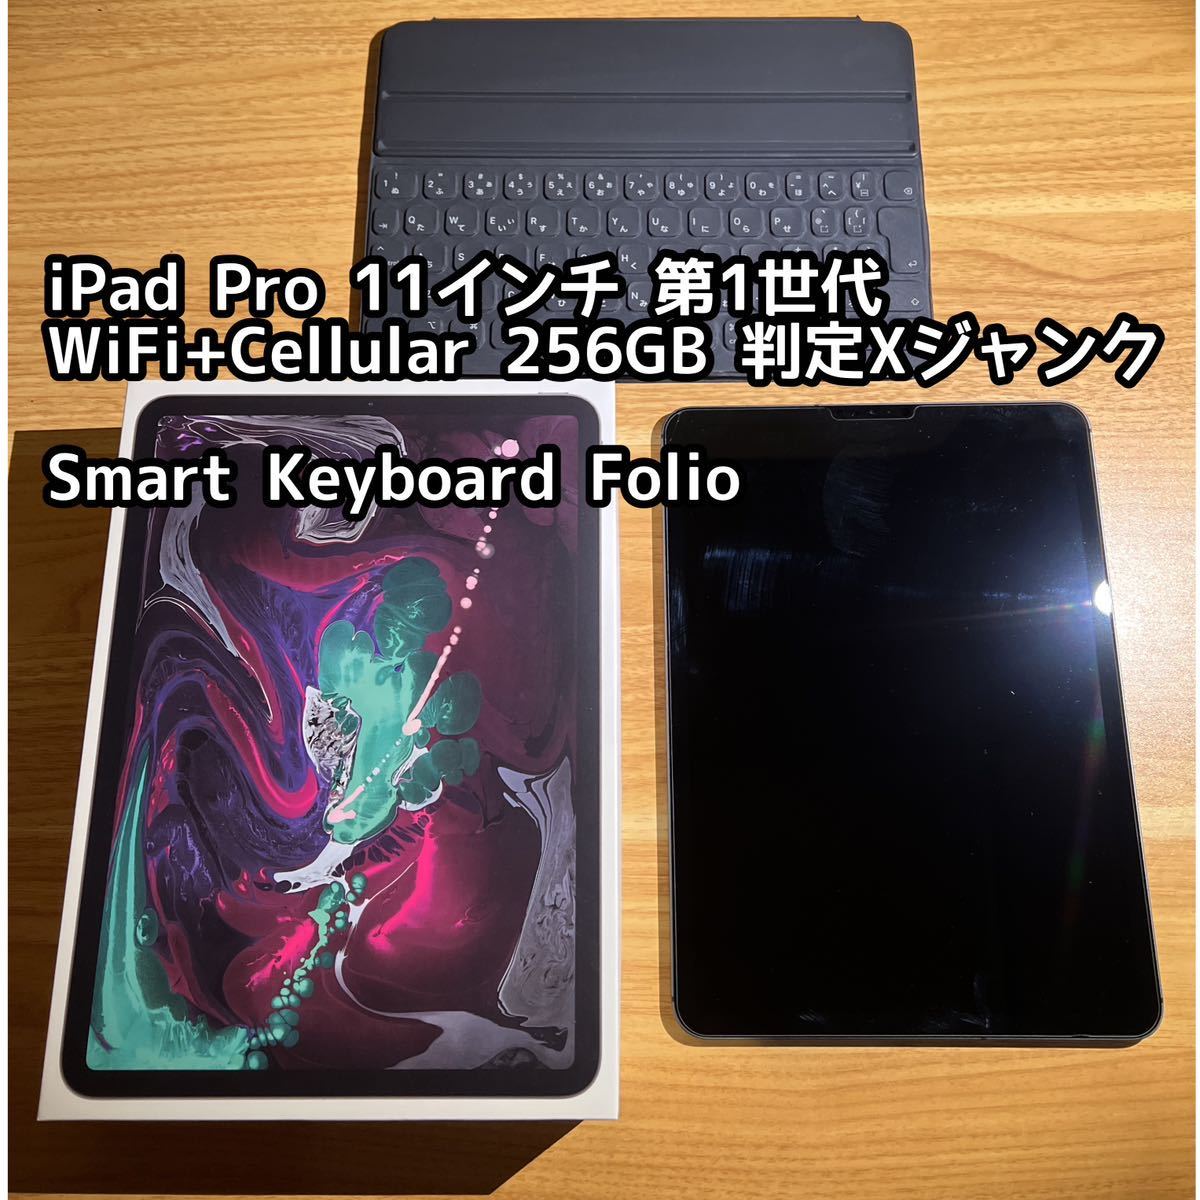 【ジャンク】iPad Pro 第1世代 WiFi+Cellular 256GB スペースグレイ 【オマケつき】